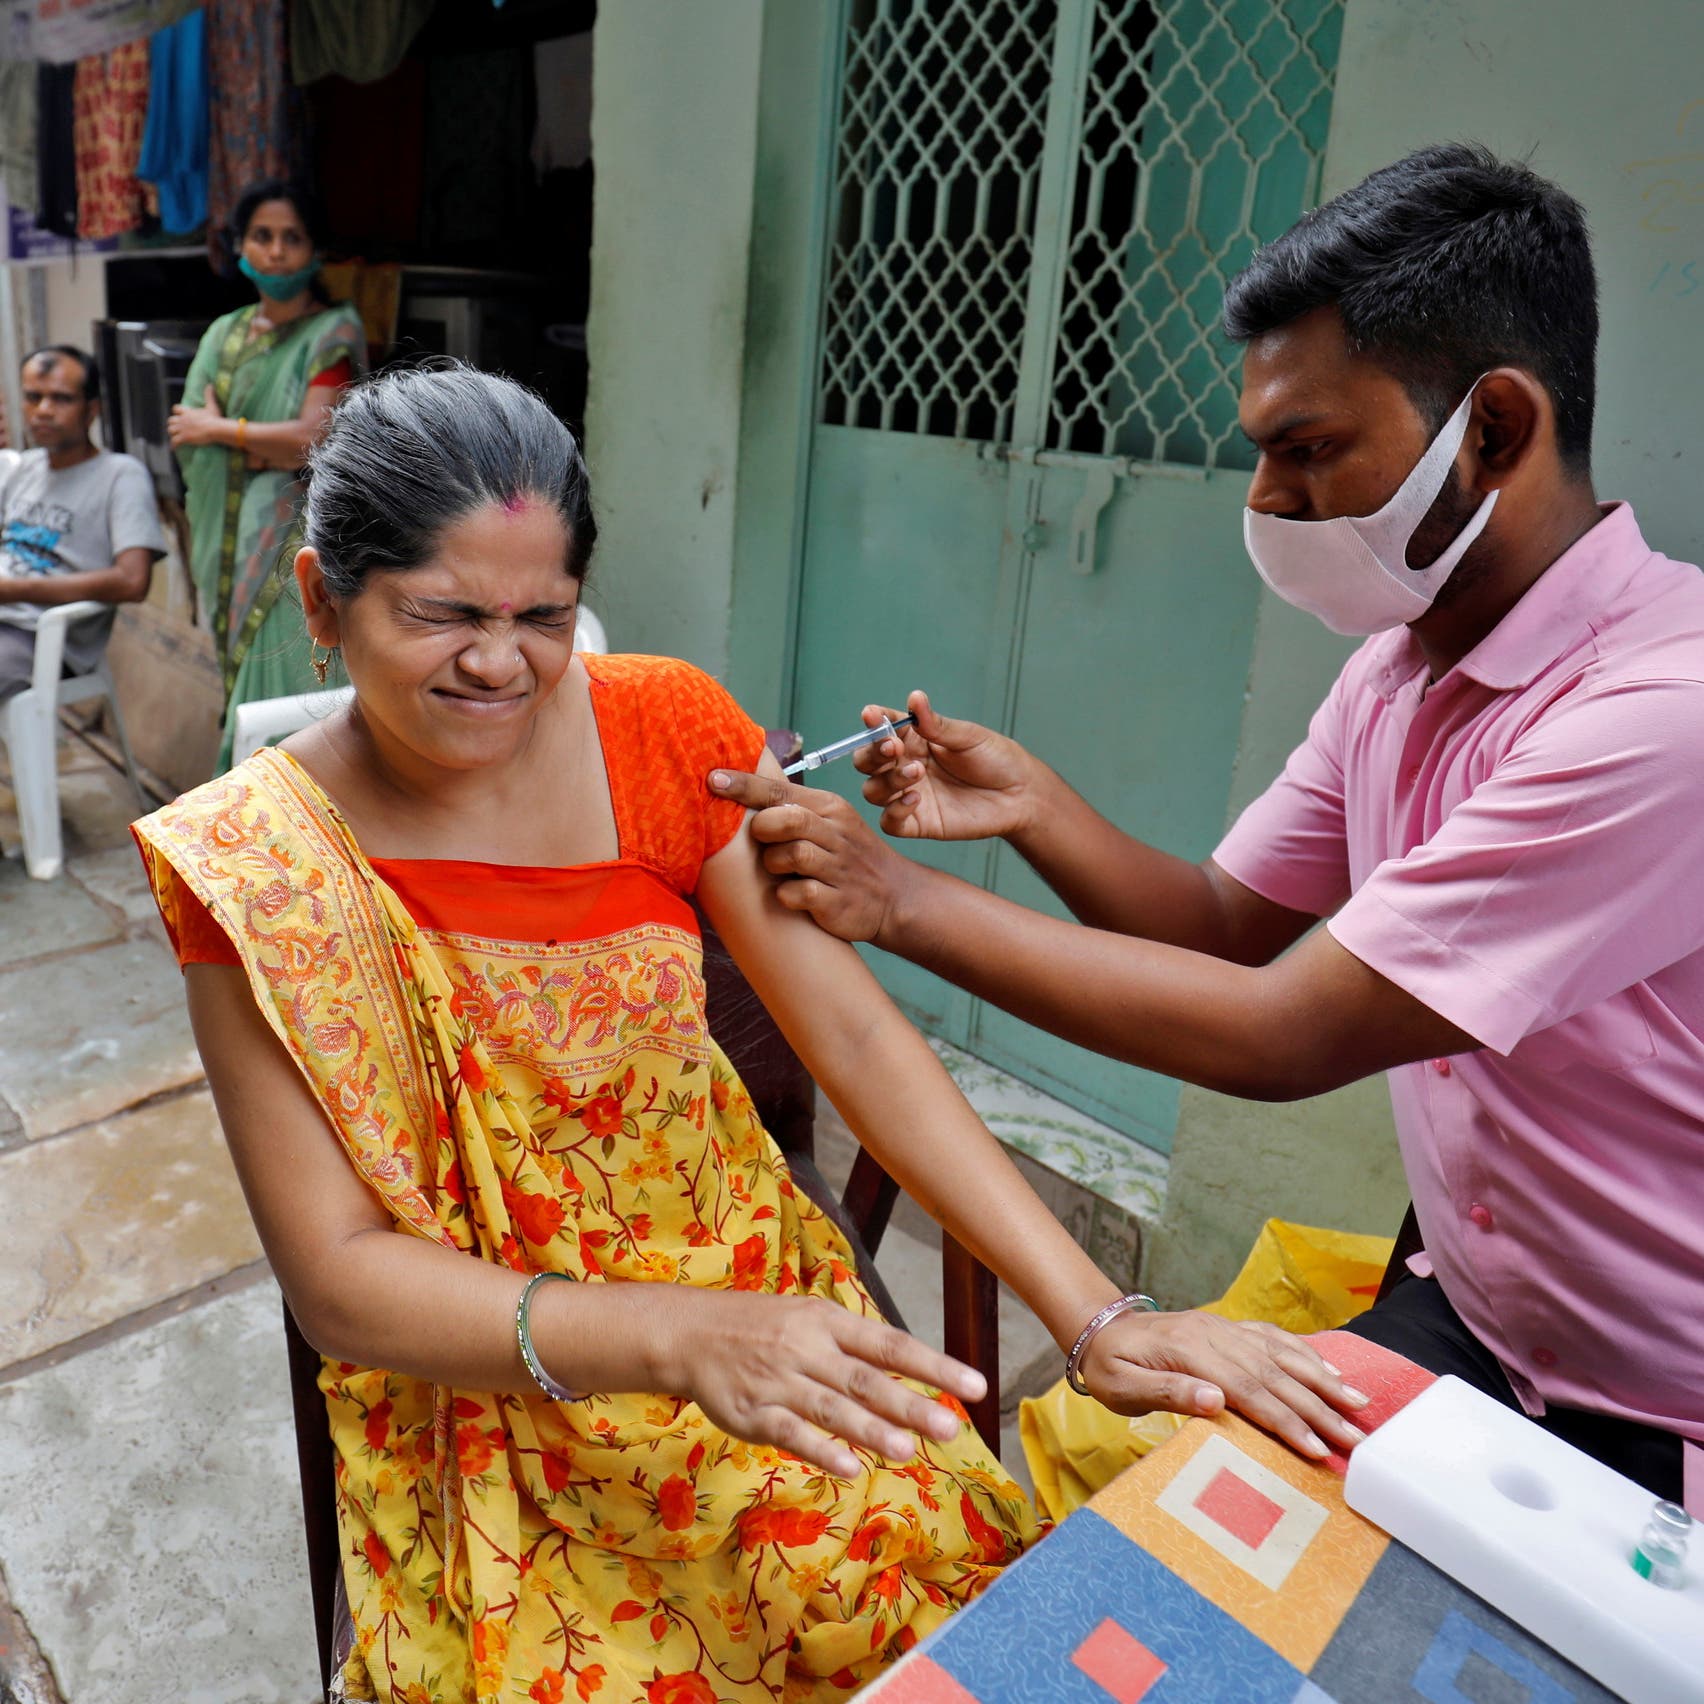 India hits 1 billion COVID-19 vaccine doses